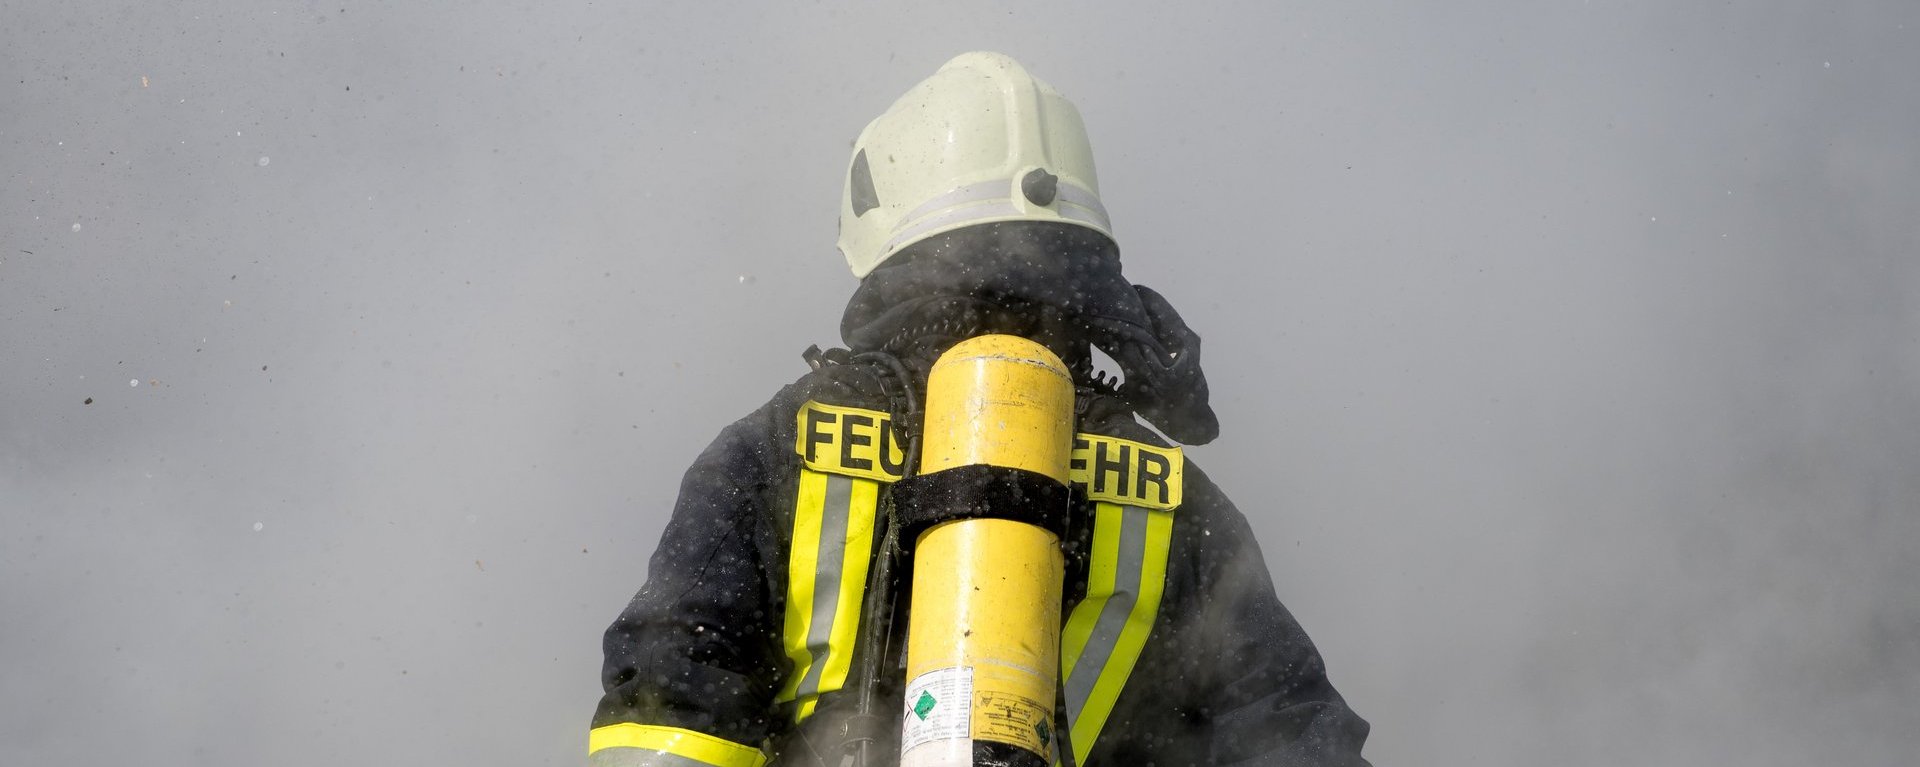 Rückansicht eines Feuerwehrmanns in Ausrüstung der in eine Rauchschwade hineinläuft. Mit Helm auf dem Kopf und Sauerstoffflasche auf dem Rücken wird sein Unterkörper bereits komplett vom Rauch umhüllt.